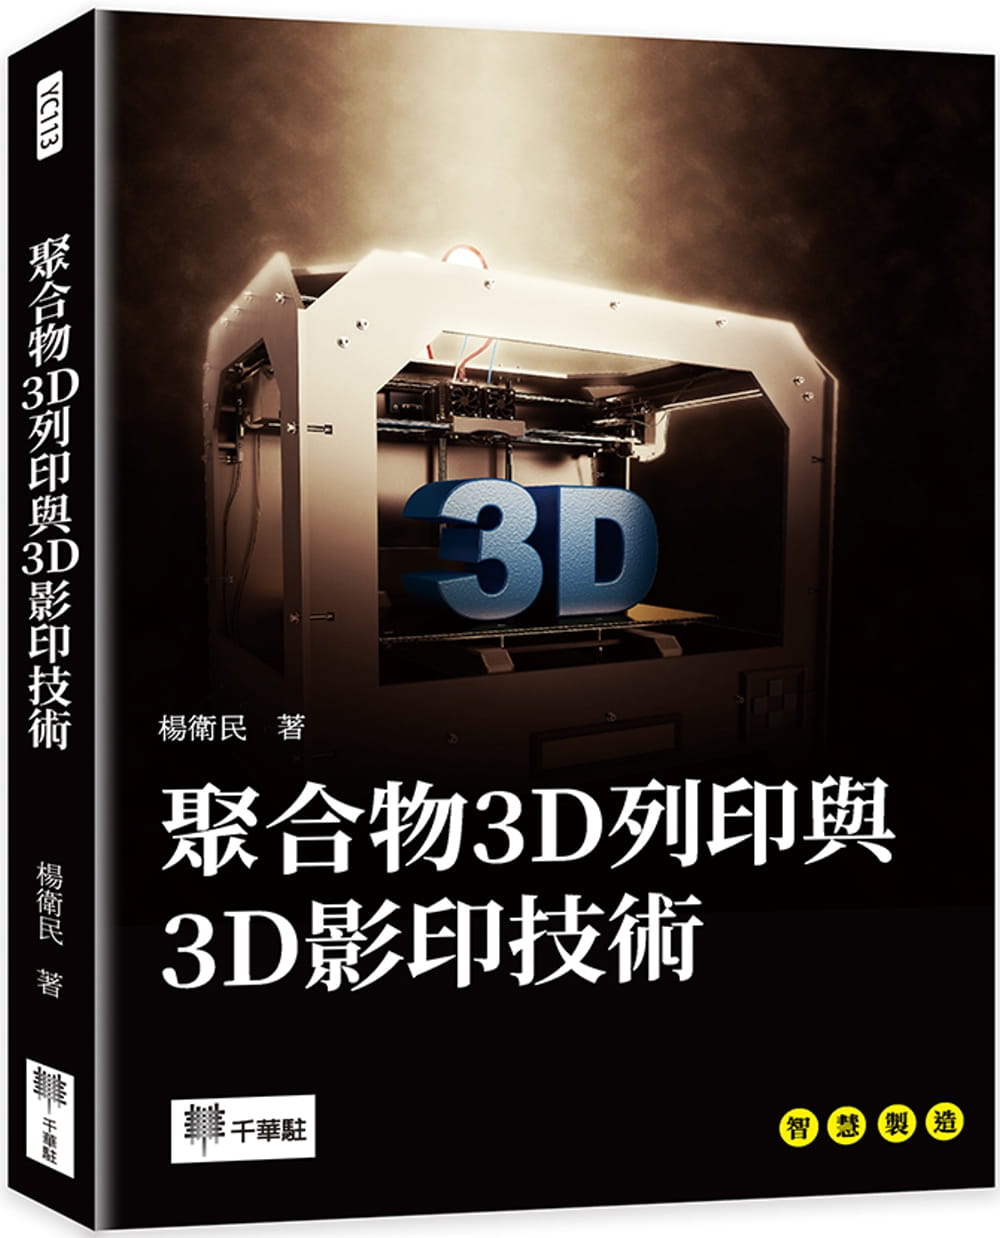 聚合物3D列印與3D影印技術